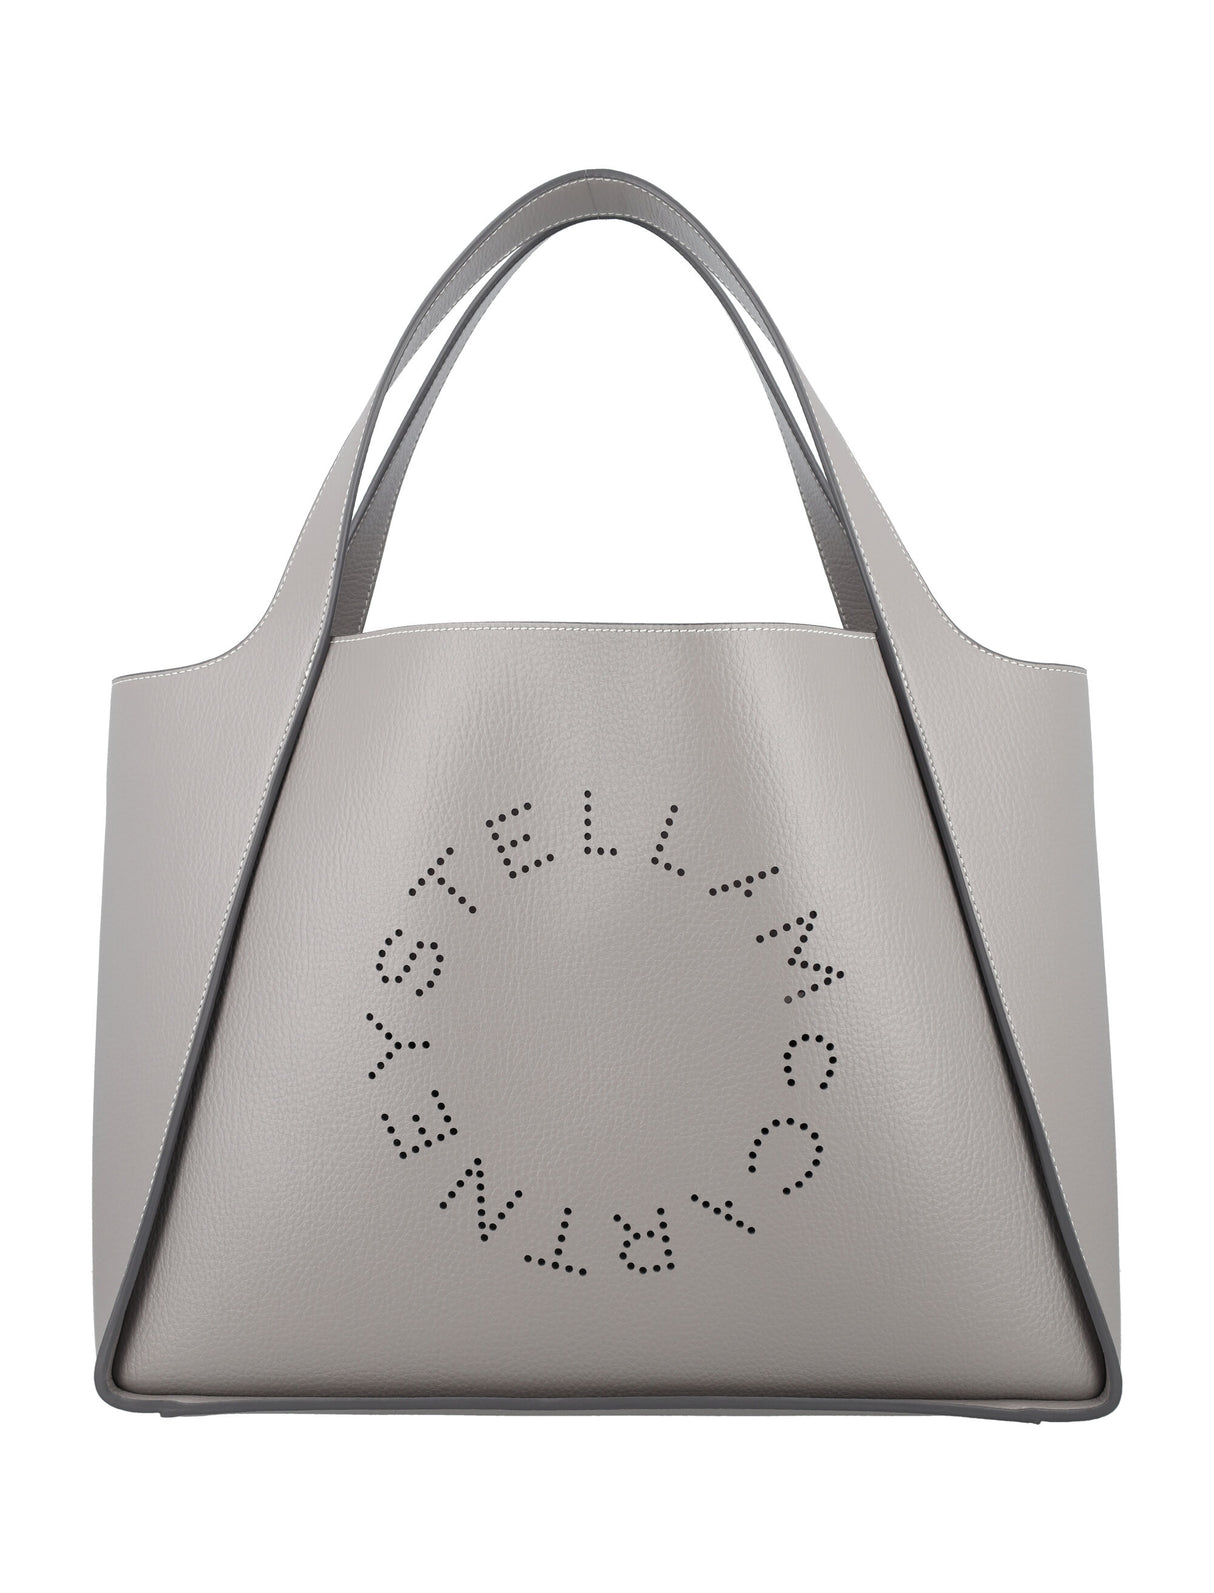 STELLA MCCARTNEY LOGO GRAINY ALTER MAT Tote Handbag Handbag